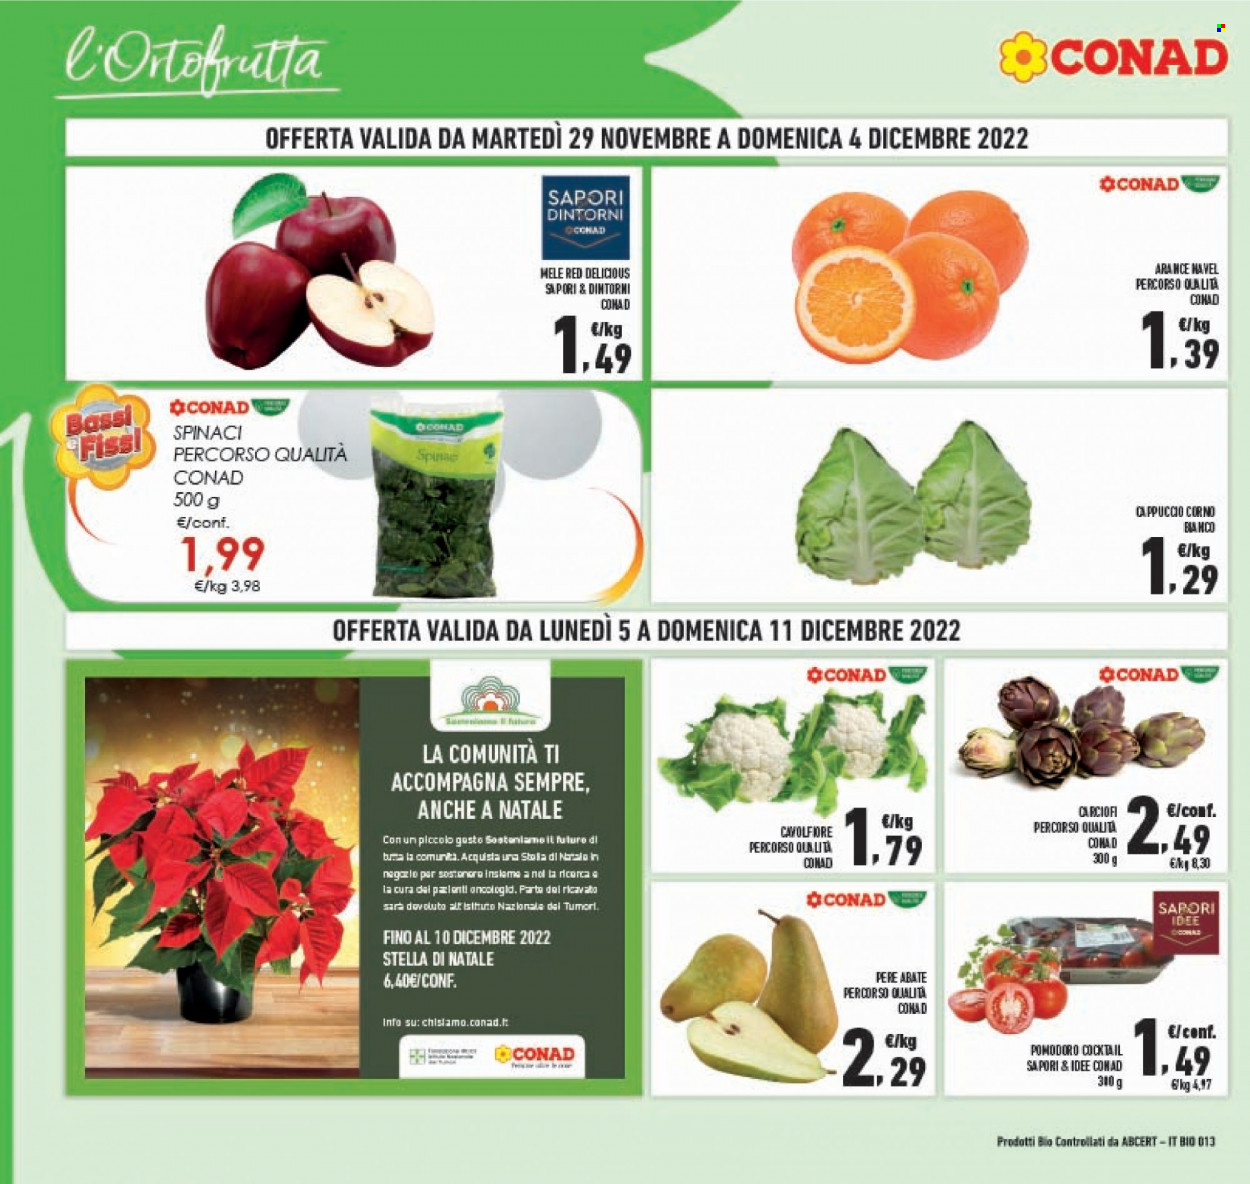 thumbnail - Volantino Conad - 29/11/2022 - 11/12/2022 - Prodotti in offerta - carciofi, cavolfiore, spinaci, pomodori, mele, arance, arancie Navel, pere, Red Delicious, stella di natale. Pagina 2.